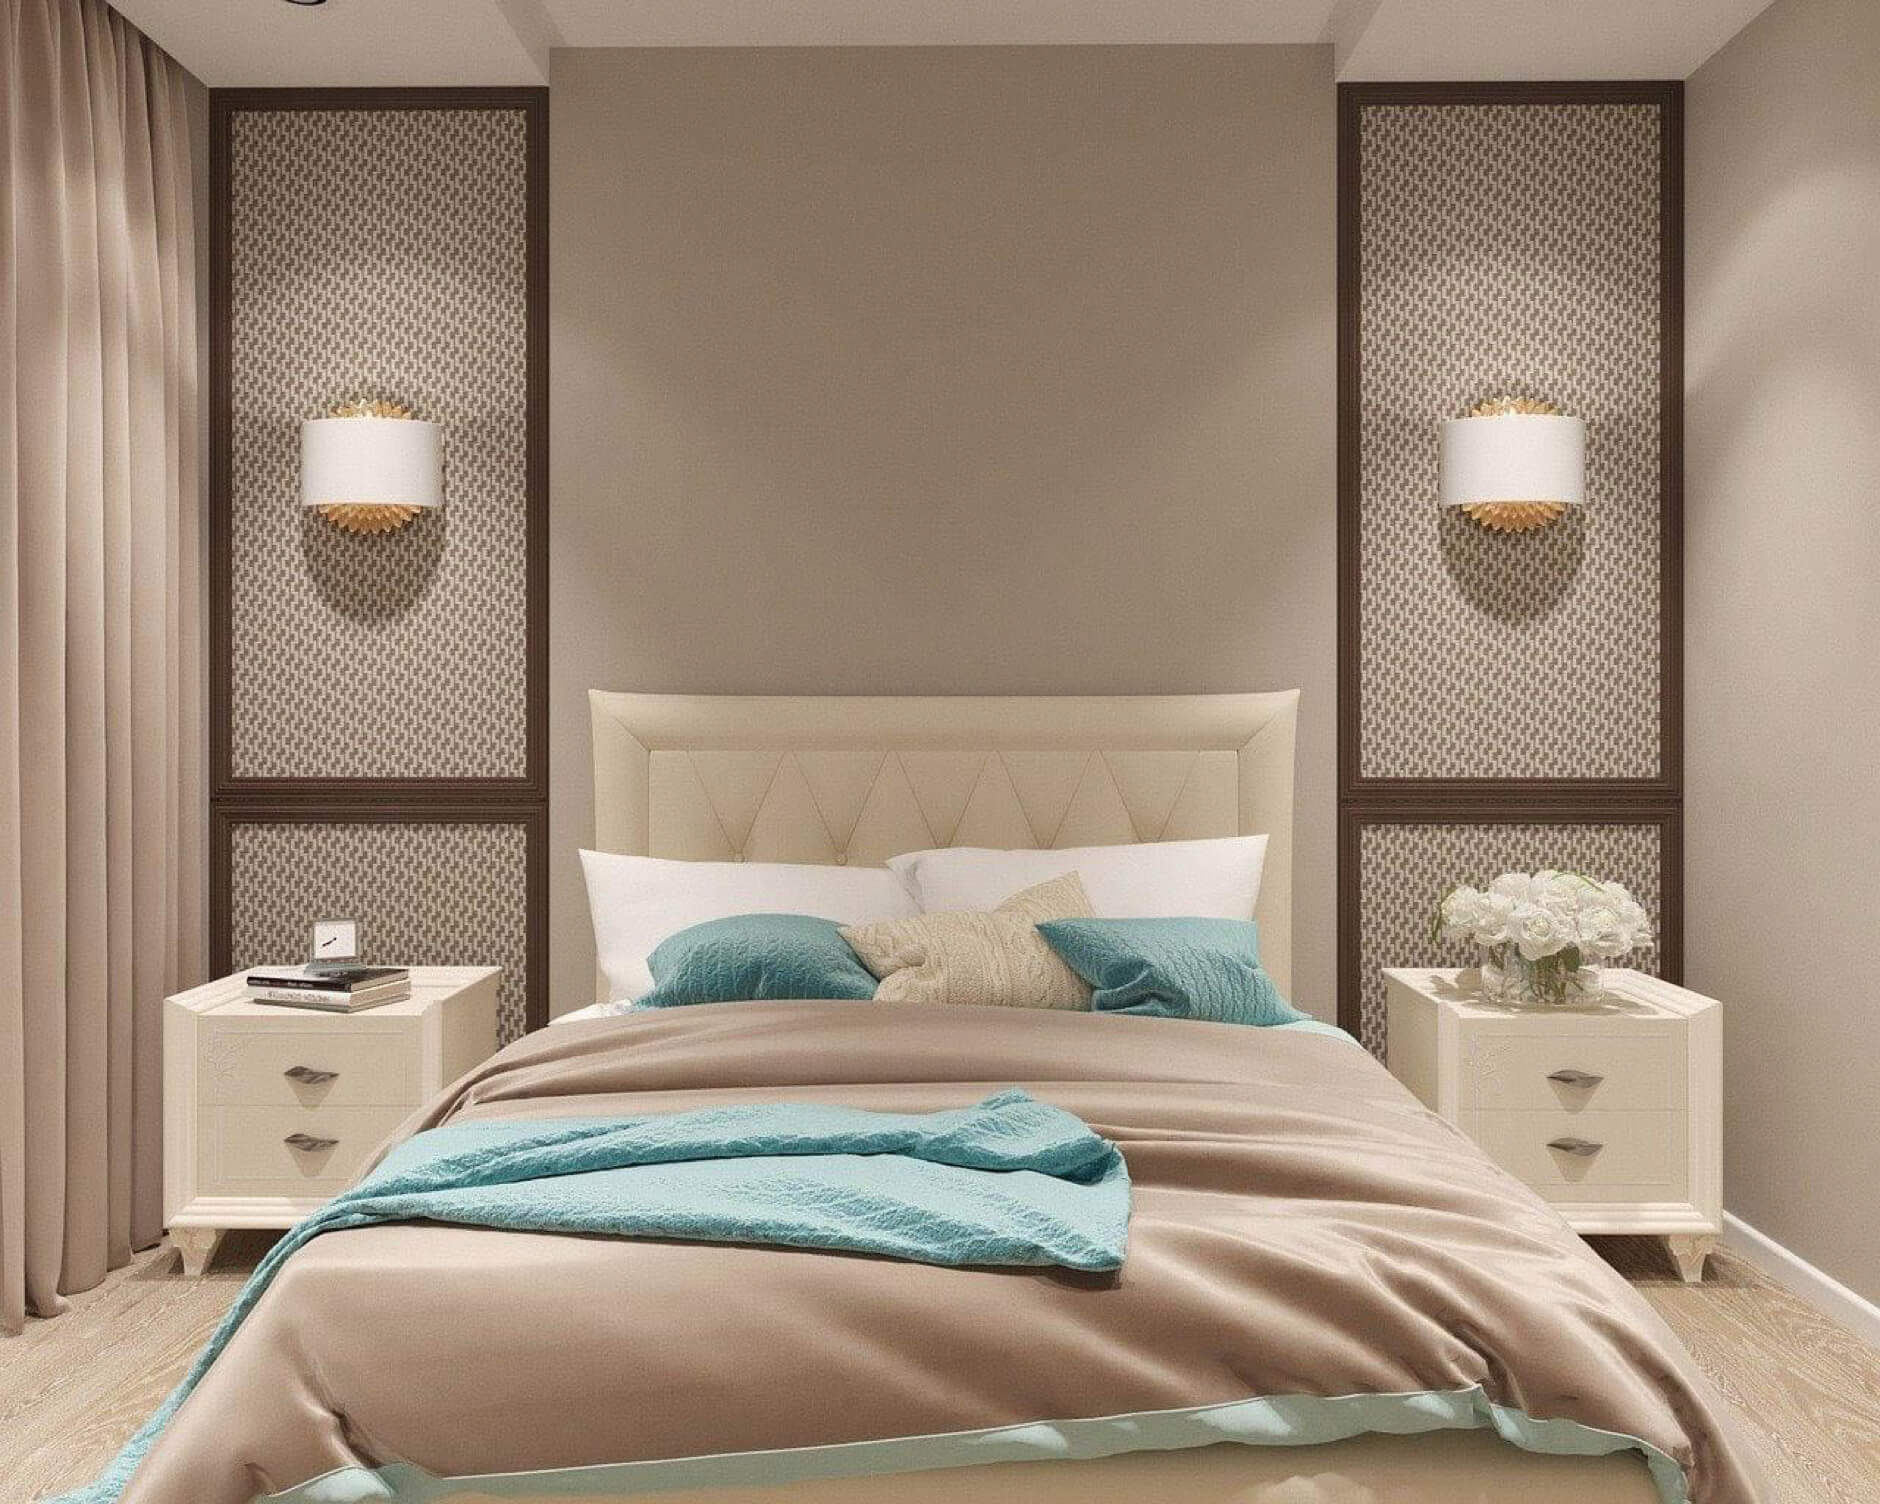 Cách trang trí phòng ngủ cho nữ đơn giản mà đẹp